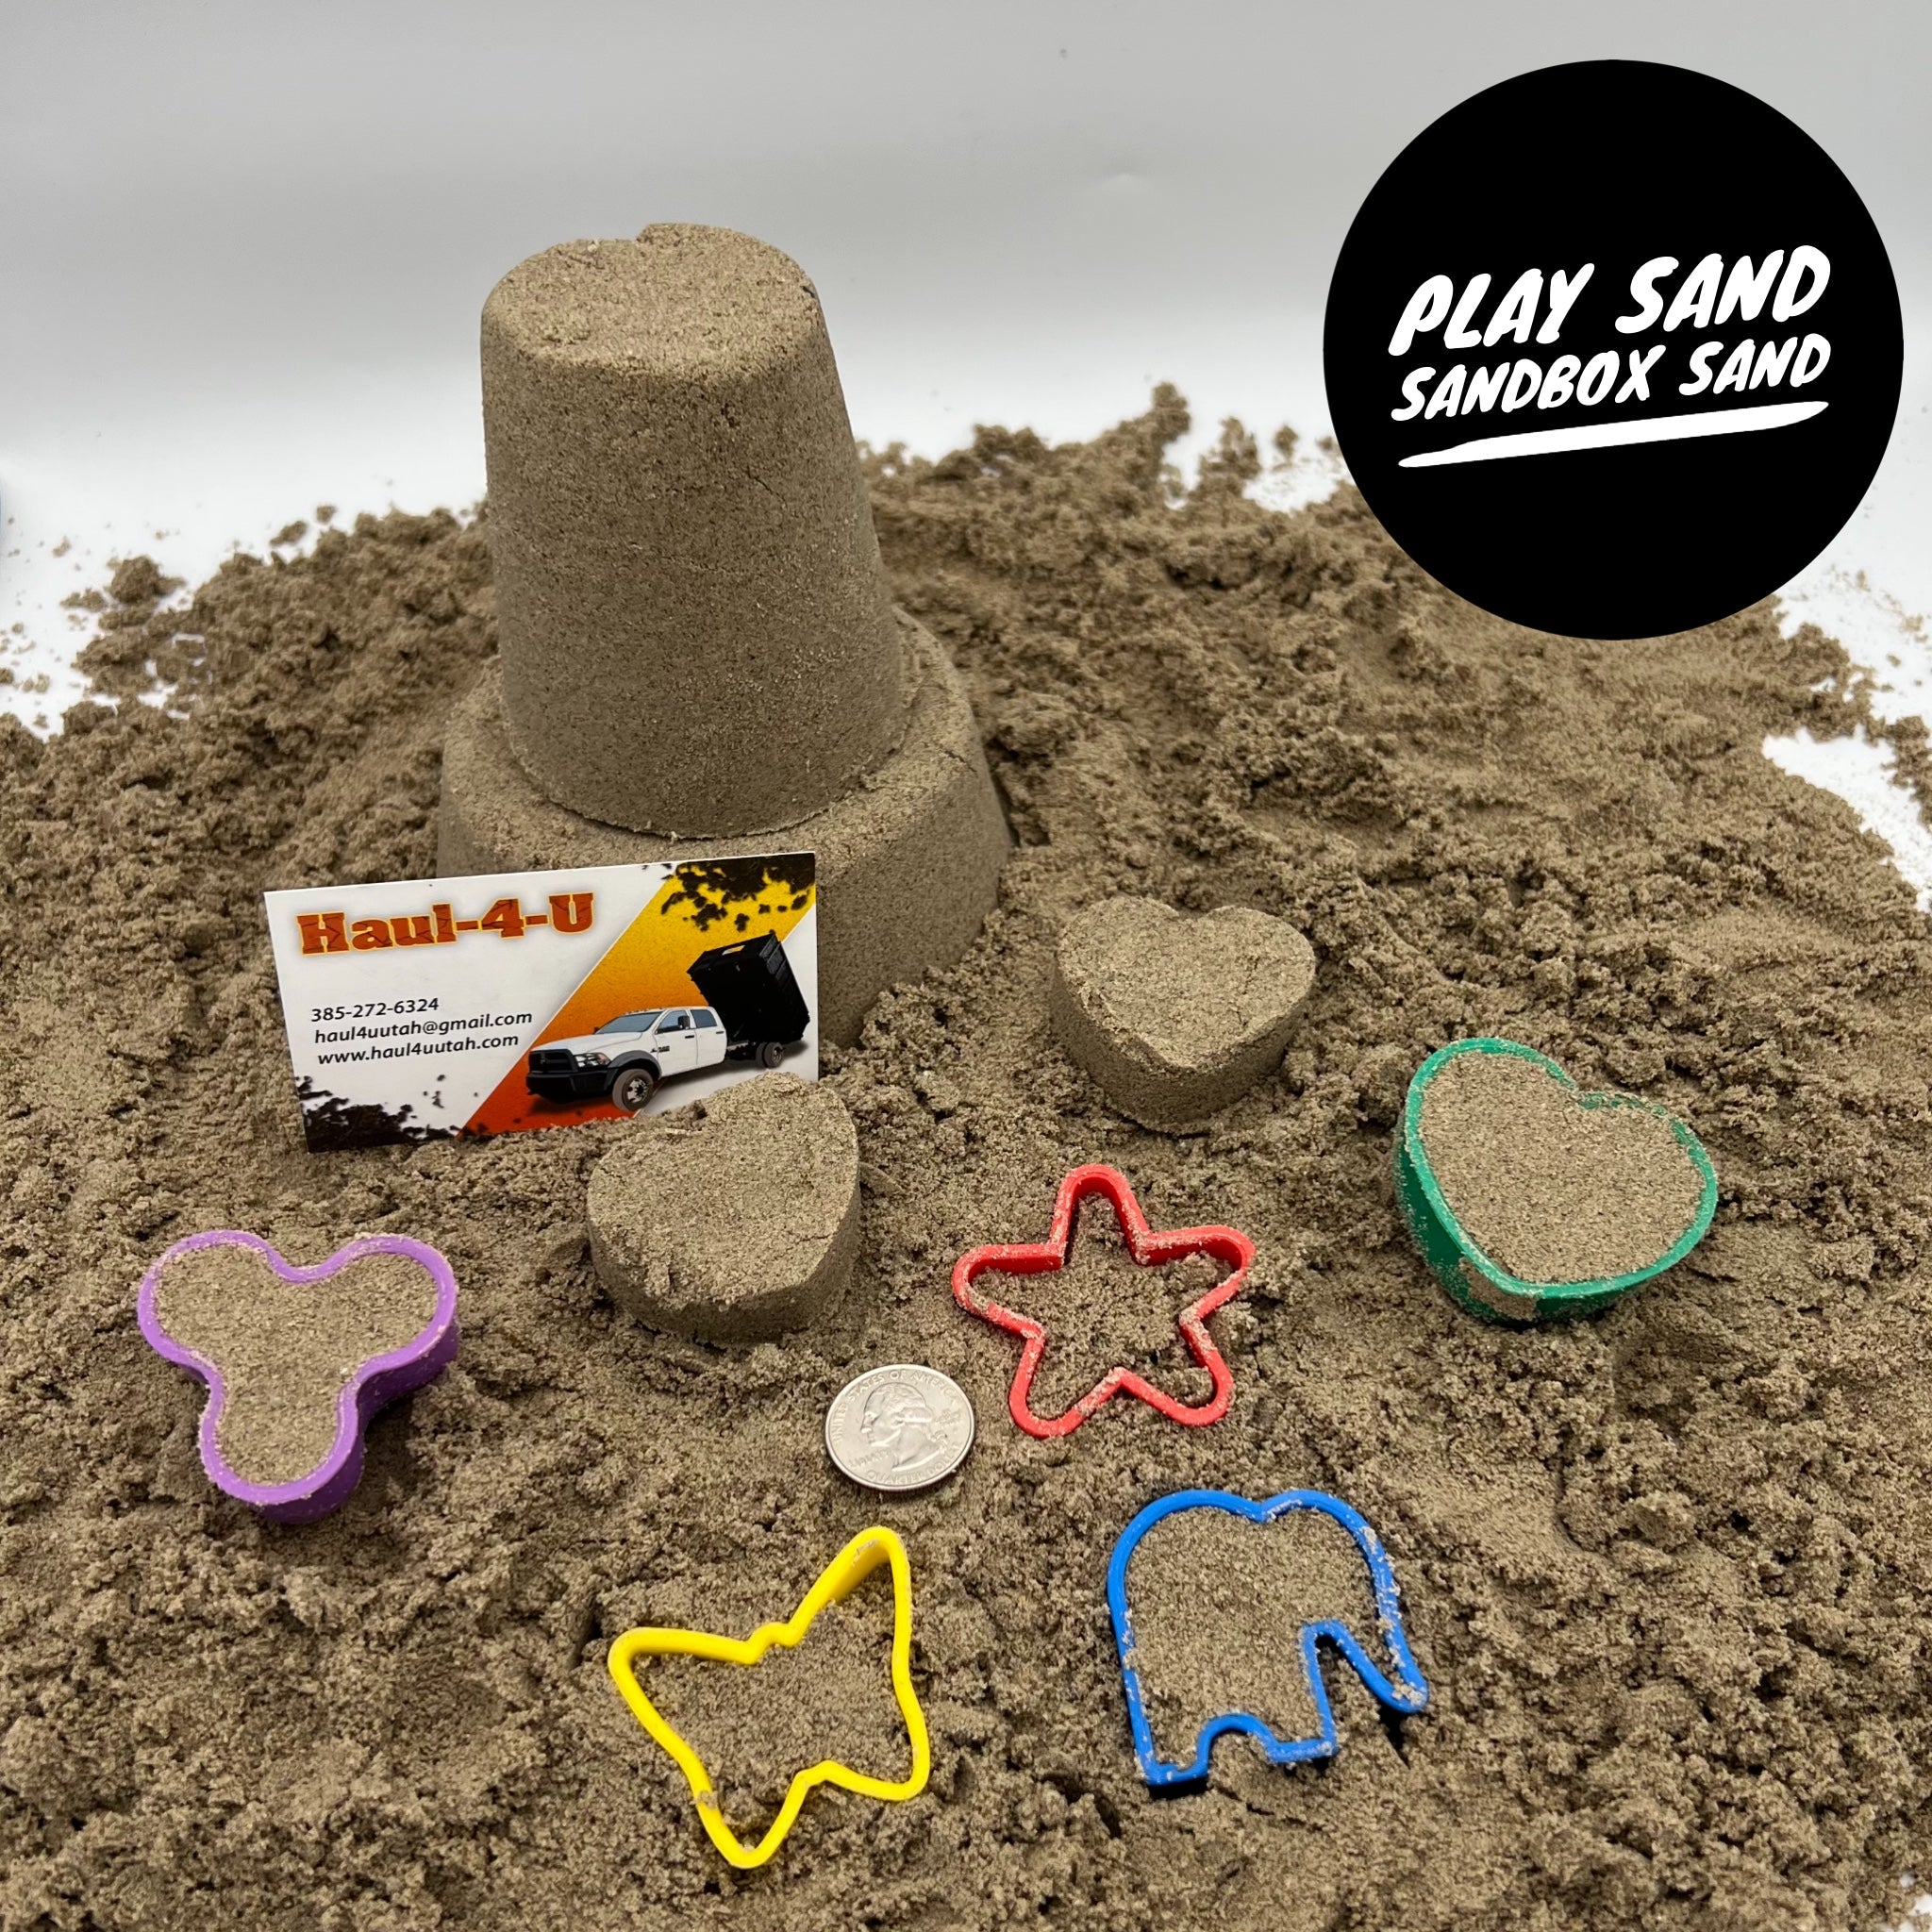 Play Sand